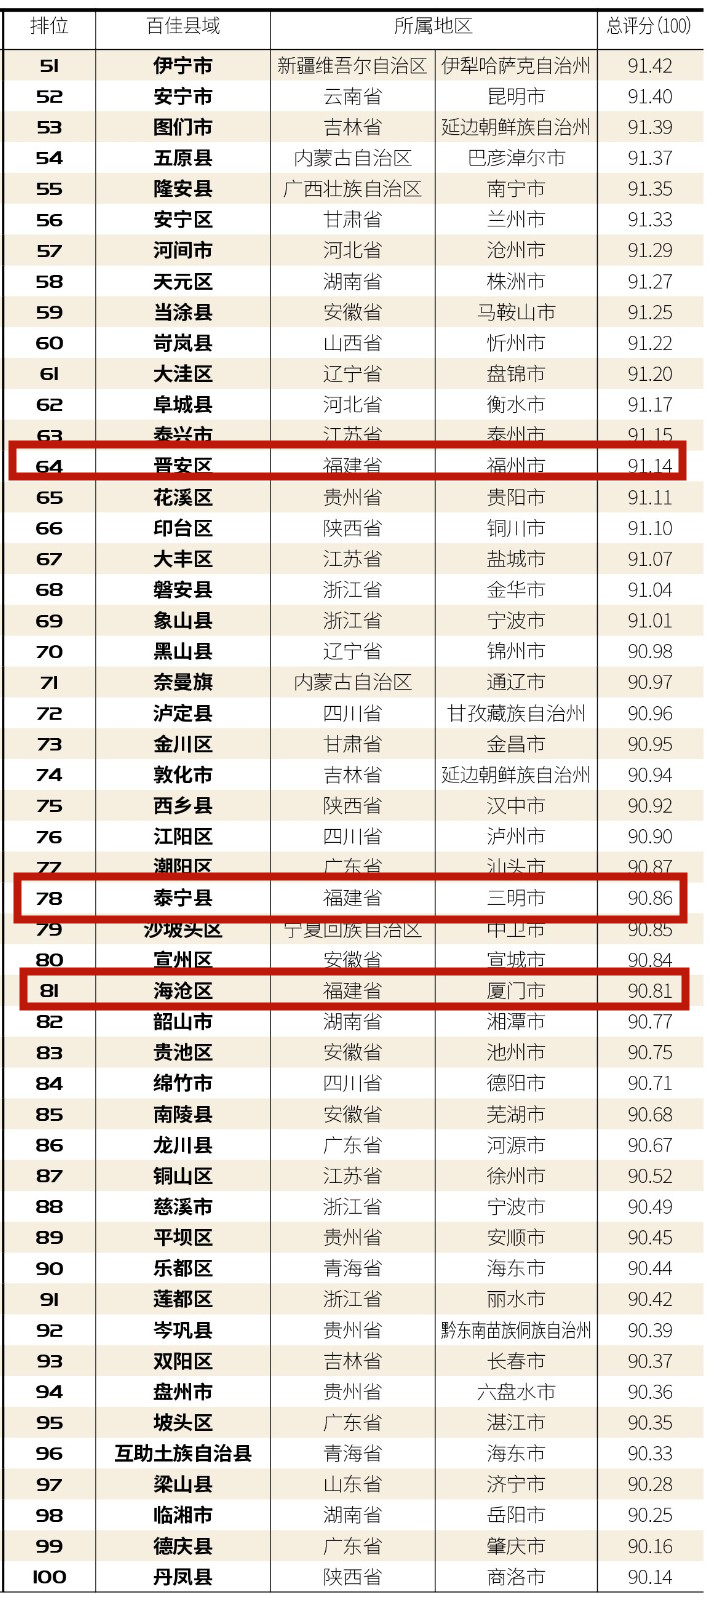 福州市晋安区上榜“中国最美乡村百佳县市”榜单